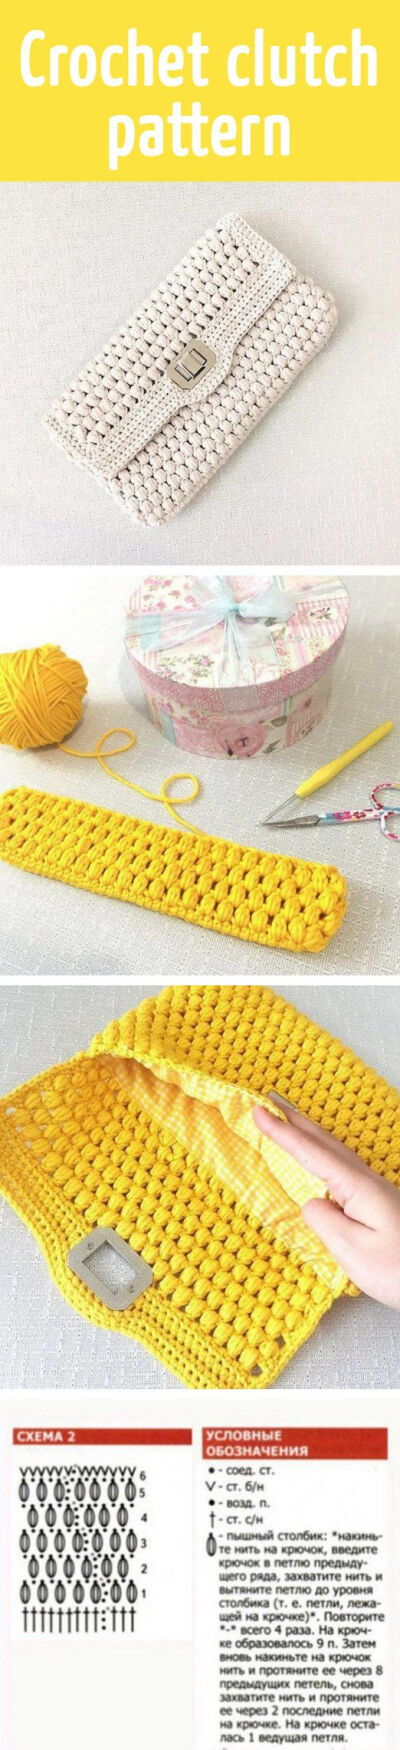 Crochet clutch pattern: